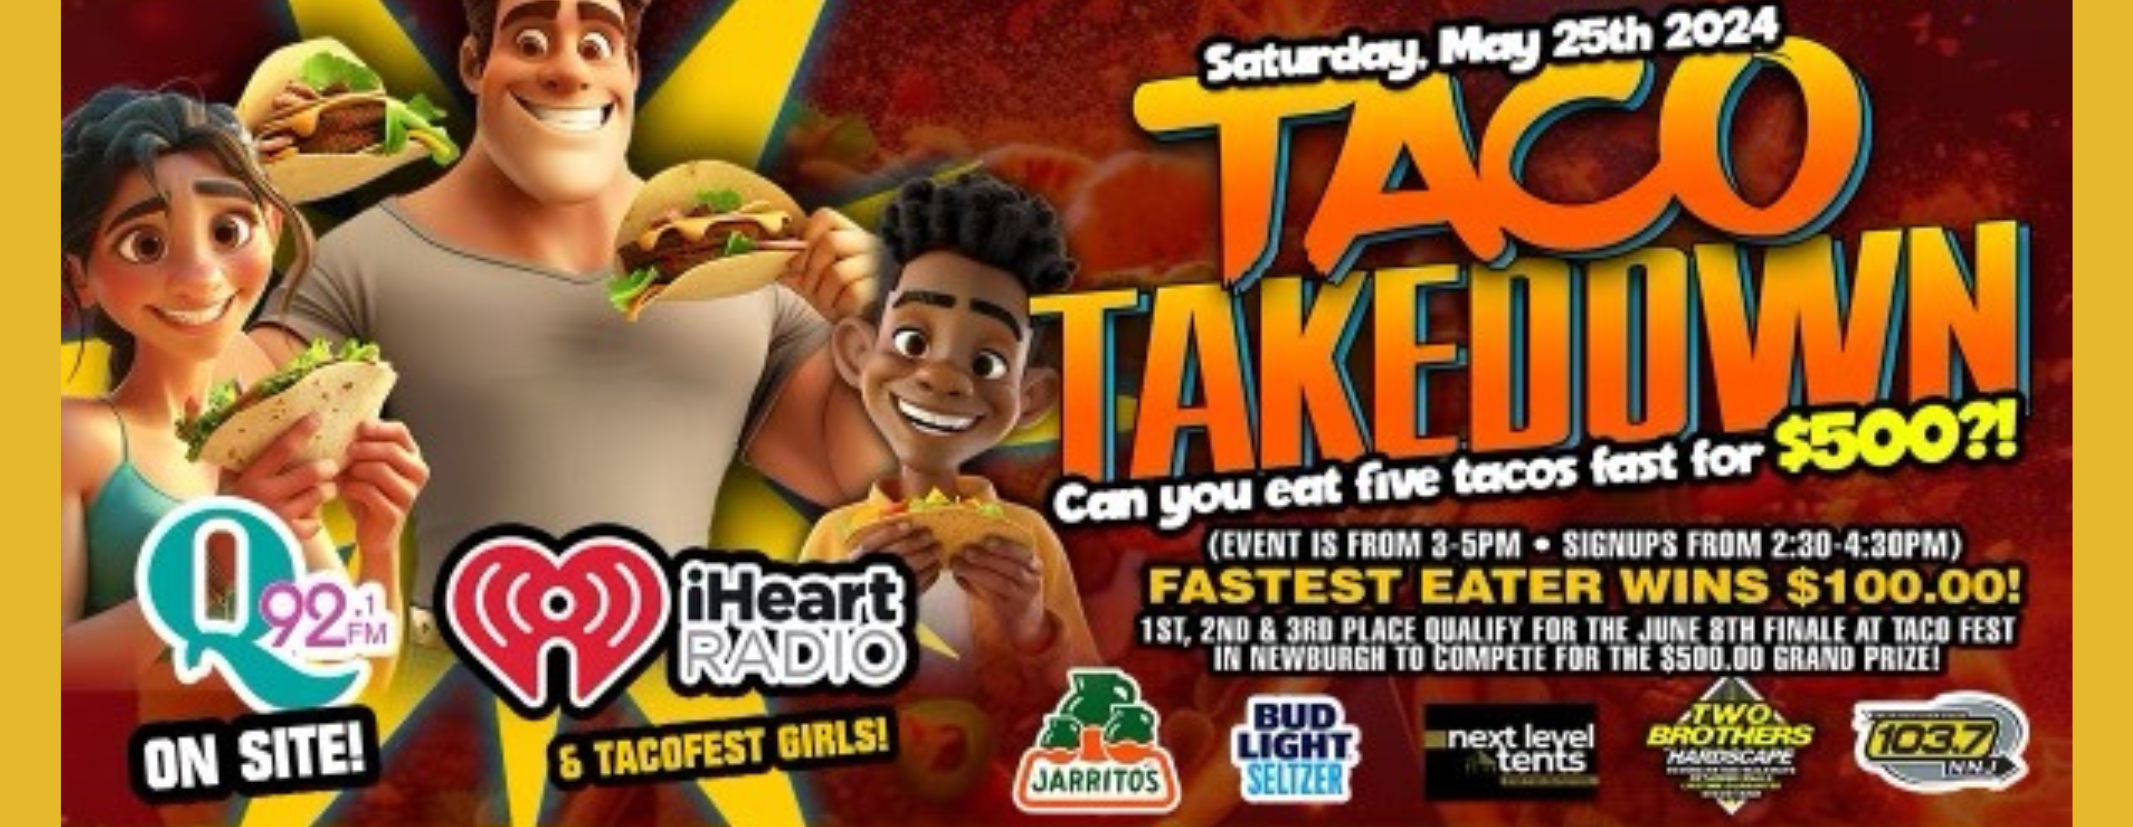 Taco Takedown Ad